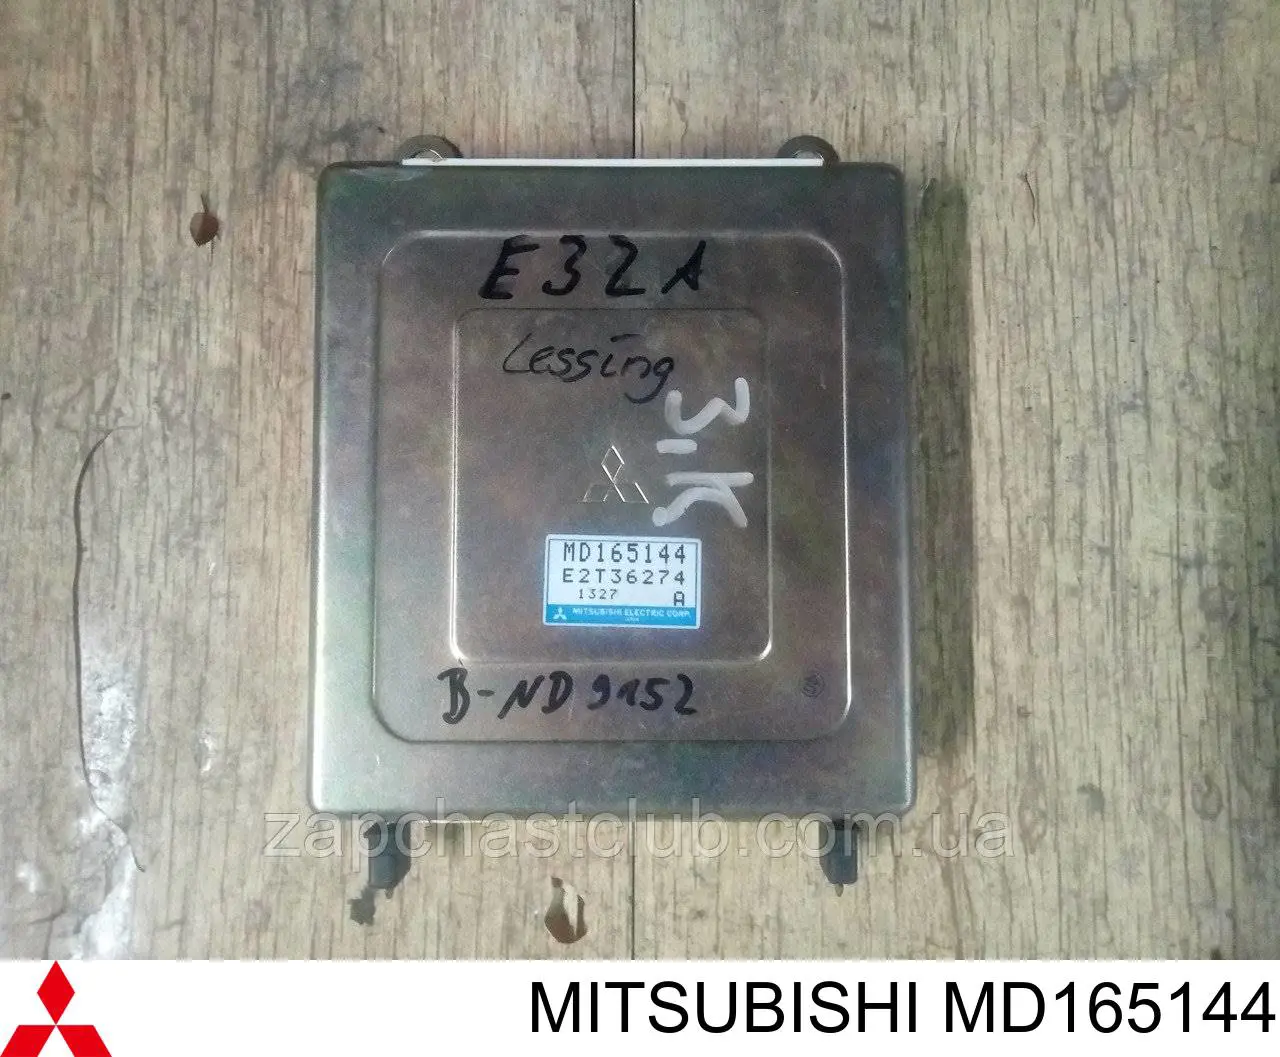 MD175515 Mitsubishi